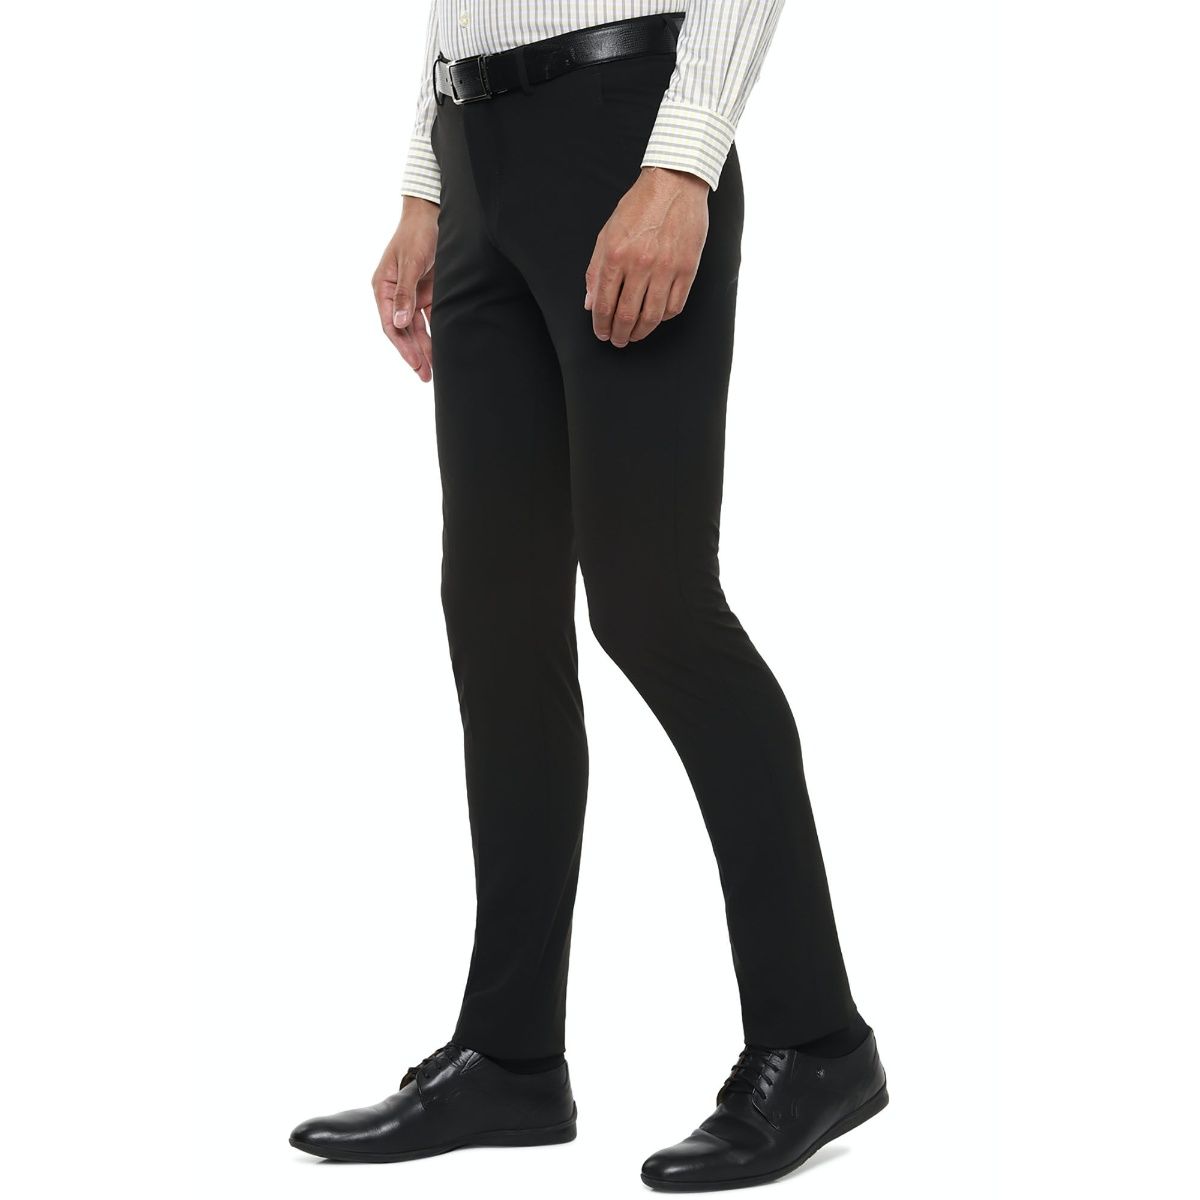 Buy Black Equestrian Slim Fit Mens Trouser Online  Genes online store 2020